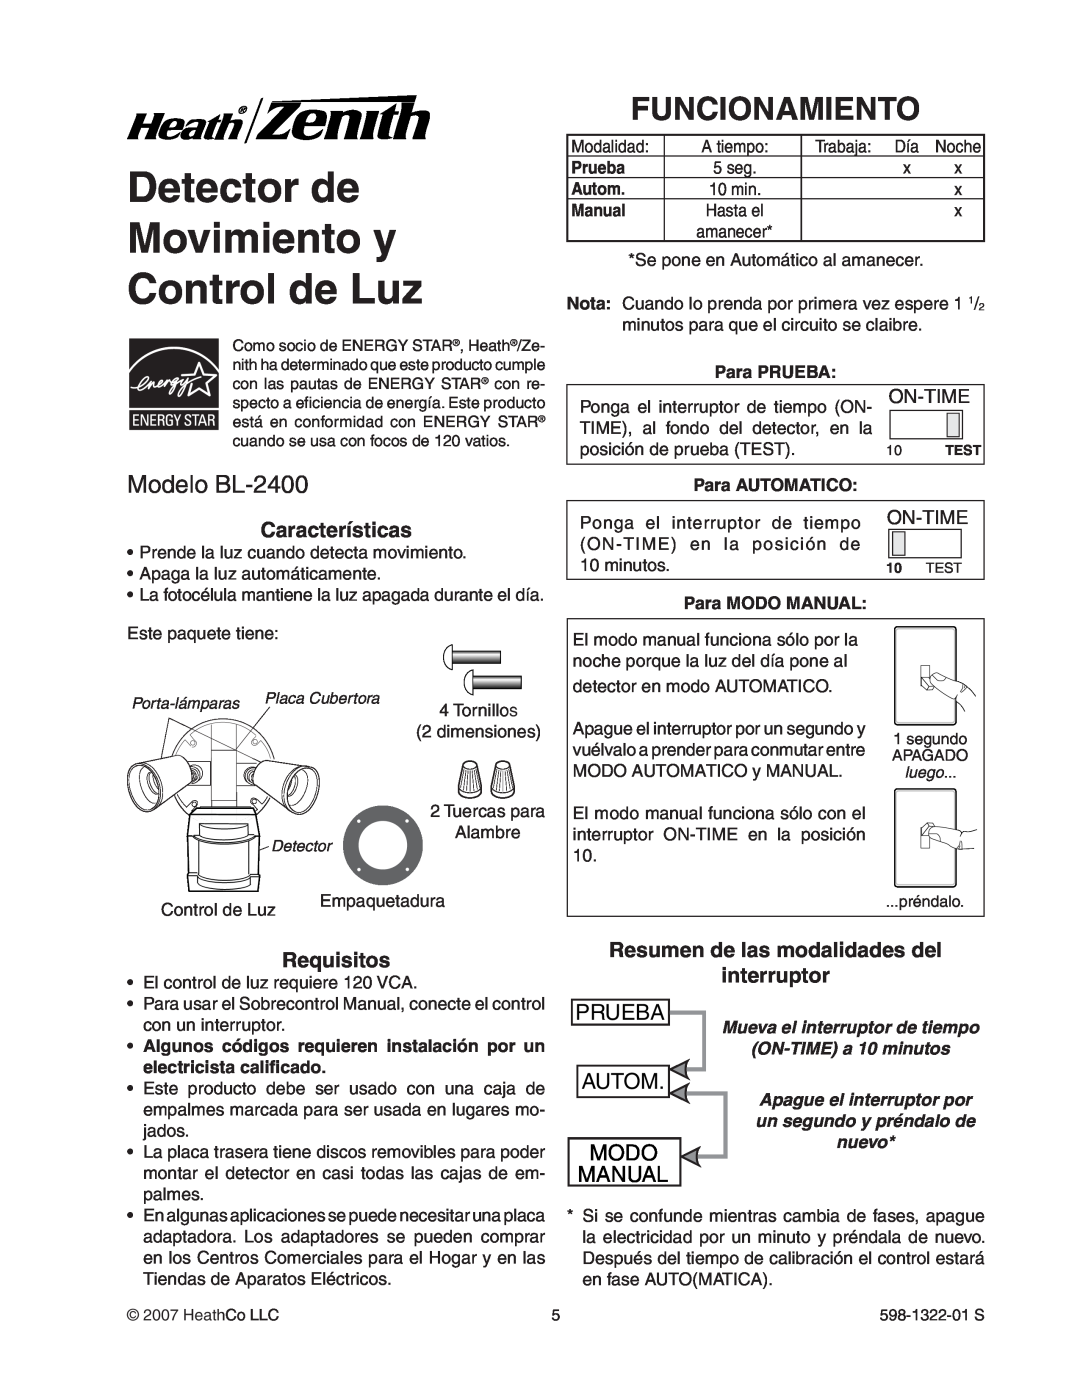 Heath Zenith manual Detector de Movimiento y Control de Luz, Funcionamiento, Modelo BL-2400, Prueba, Autom, Modo, Manual 